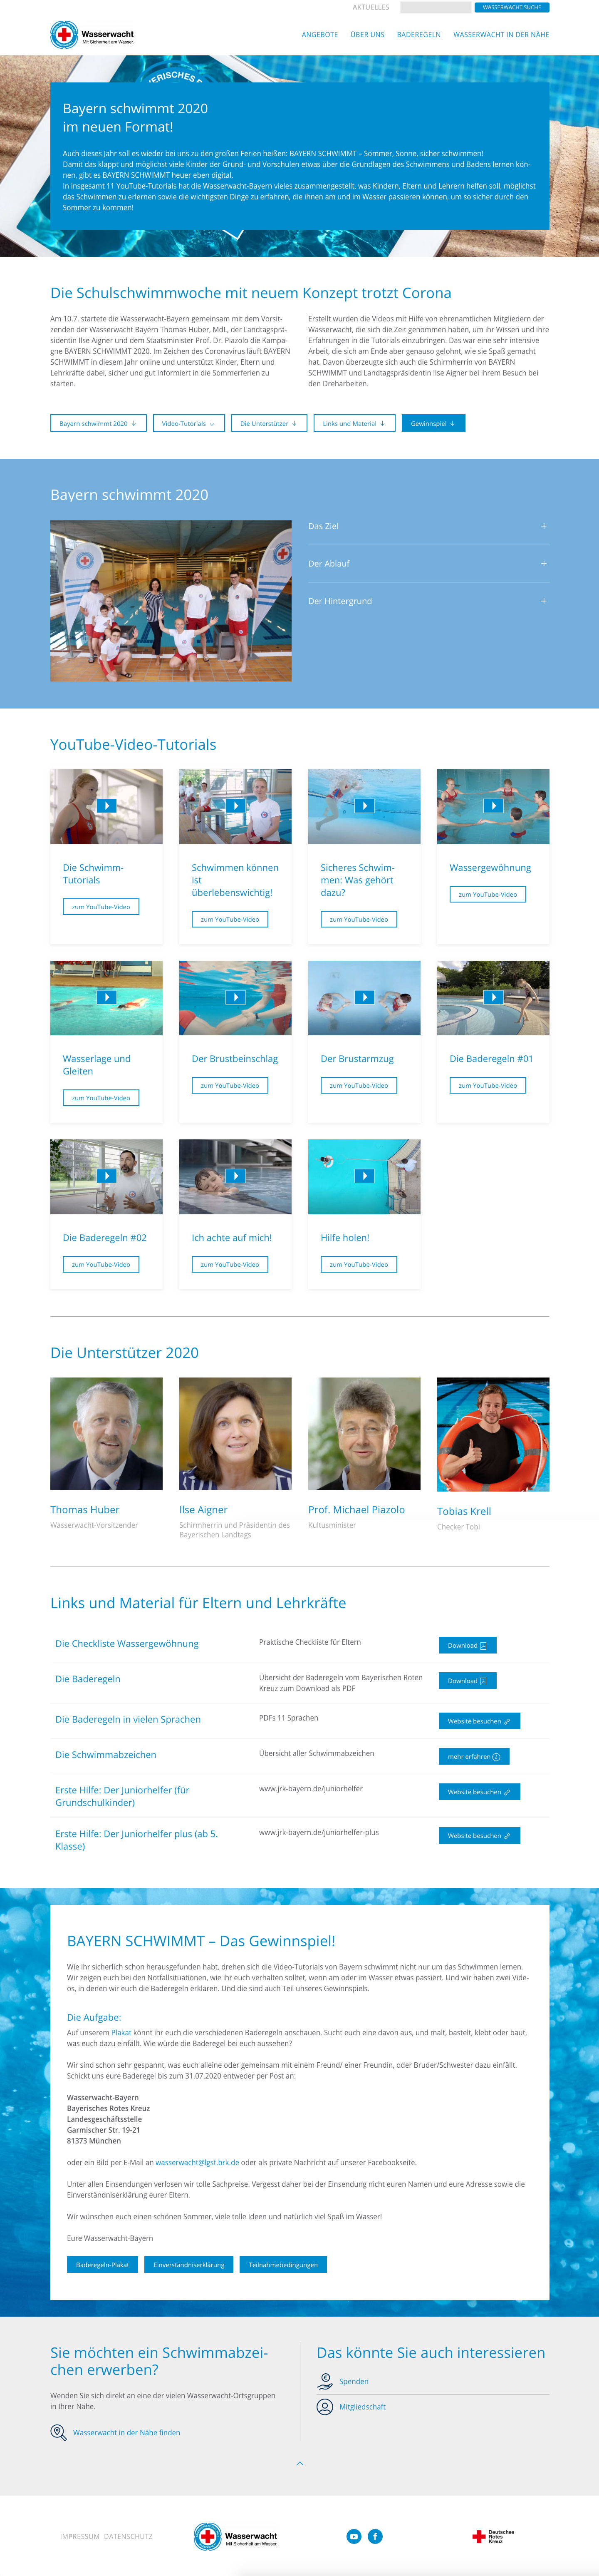 Landingpage "Schulschwimmwochen BAYERN SCHWIMMT 2020" Screenshot